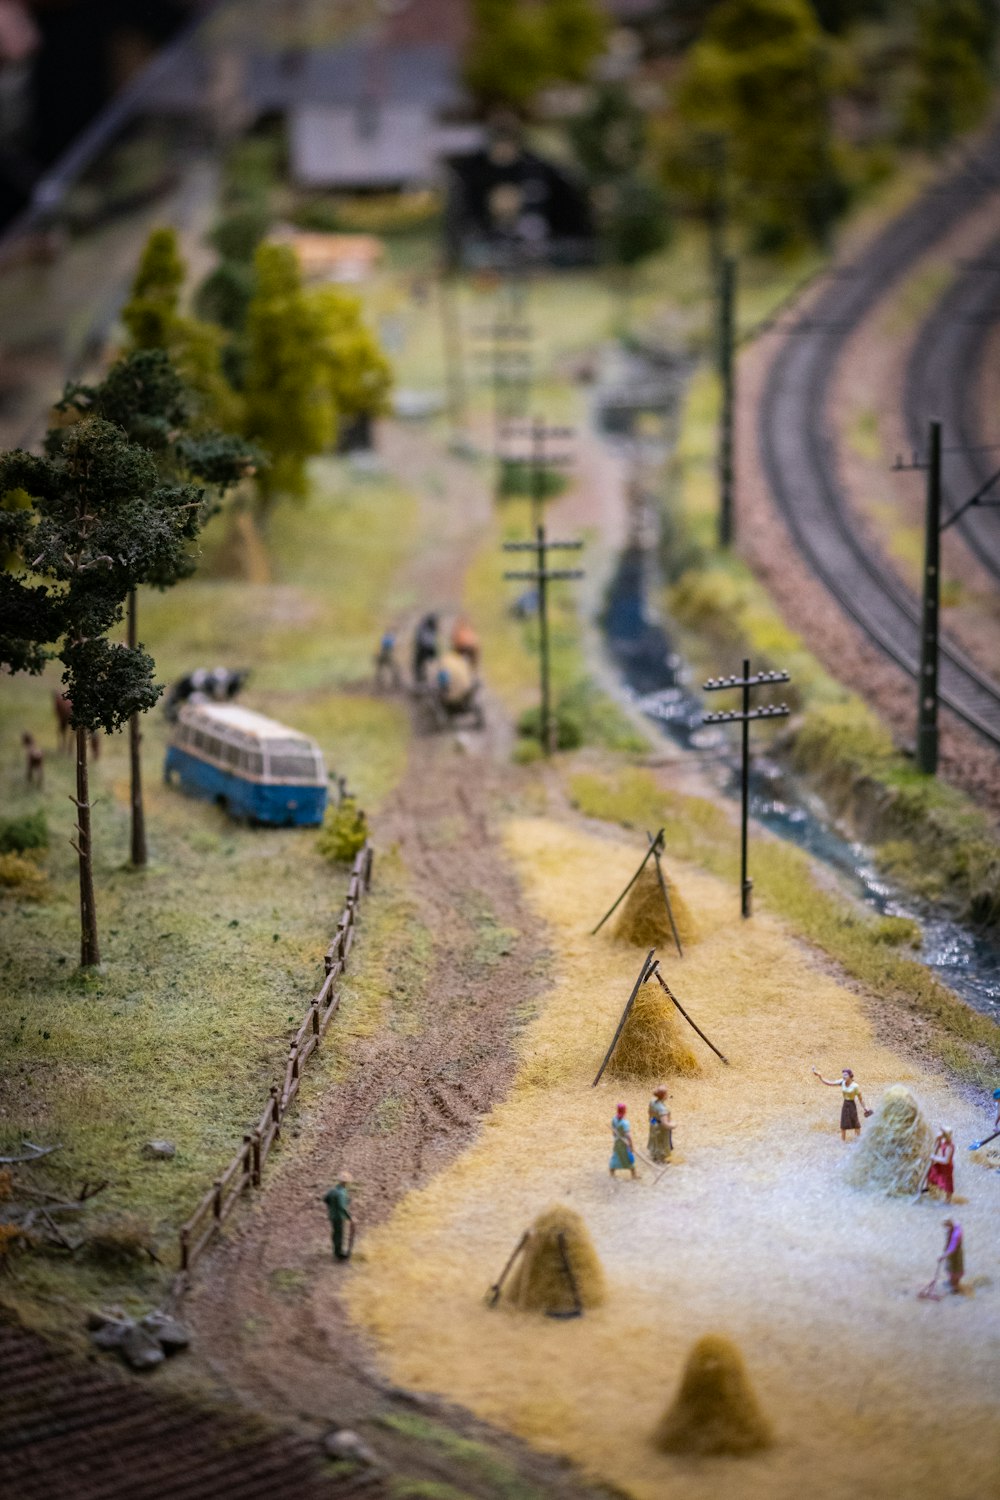 Modell einer Eisenbahnstrecke mit einem Zug darauf